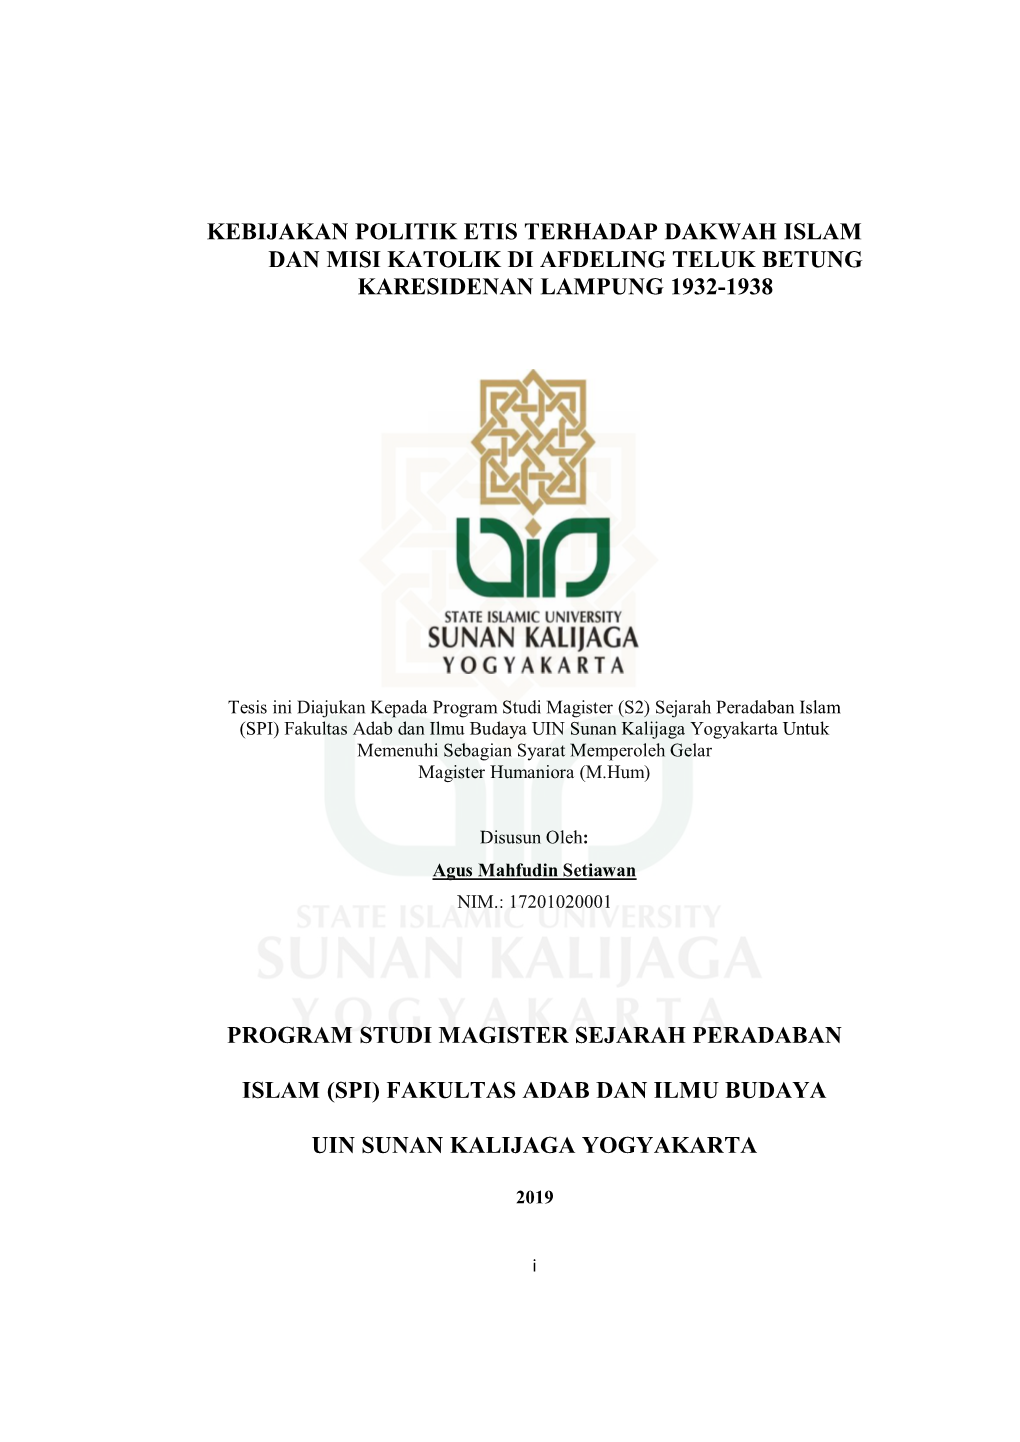 Kebijakan Politik Etis Terhadap Dakwah Islam Dan Misi Katolik Di Afdeling Teluk Betung Karesidenan Lampung 1932-1938